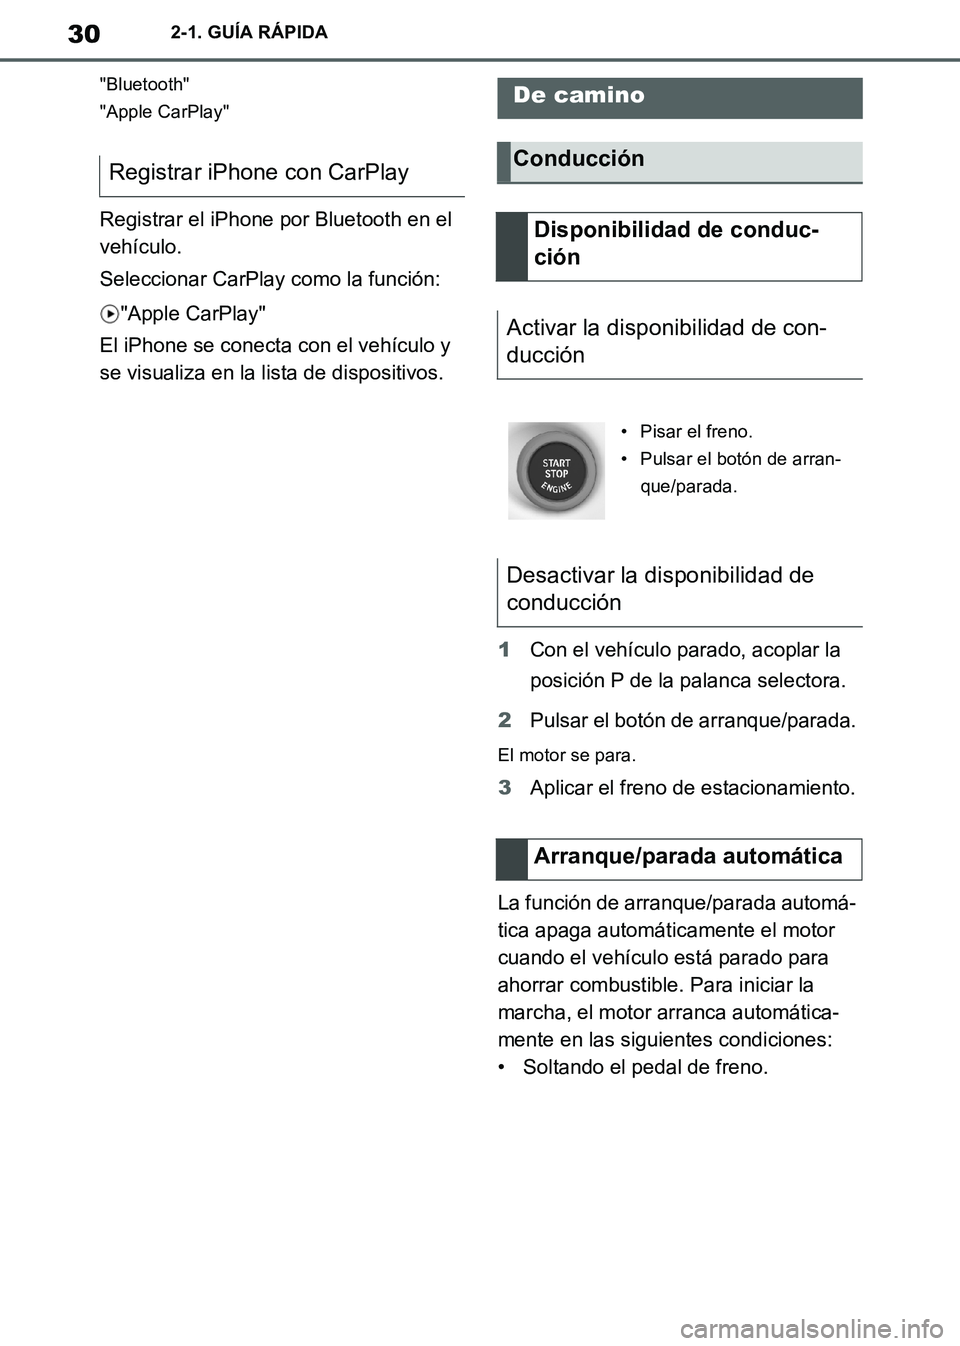 TOYOTA SUPRA 2019  Manuale de Empleo (in Spanish) 30
Supra Owners Manual_ES
2-1. GUÍA RÁPIDA
"Bluetooth"
"Apple CarPlay"
Registrar el iPhone por Bluetooth en el 
vehículo.
Seleccionar CarPlay como la función:
"Apple CarPlay"
El iPhone se conecta